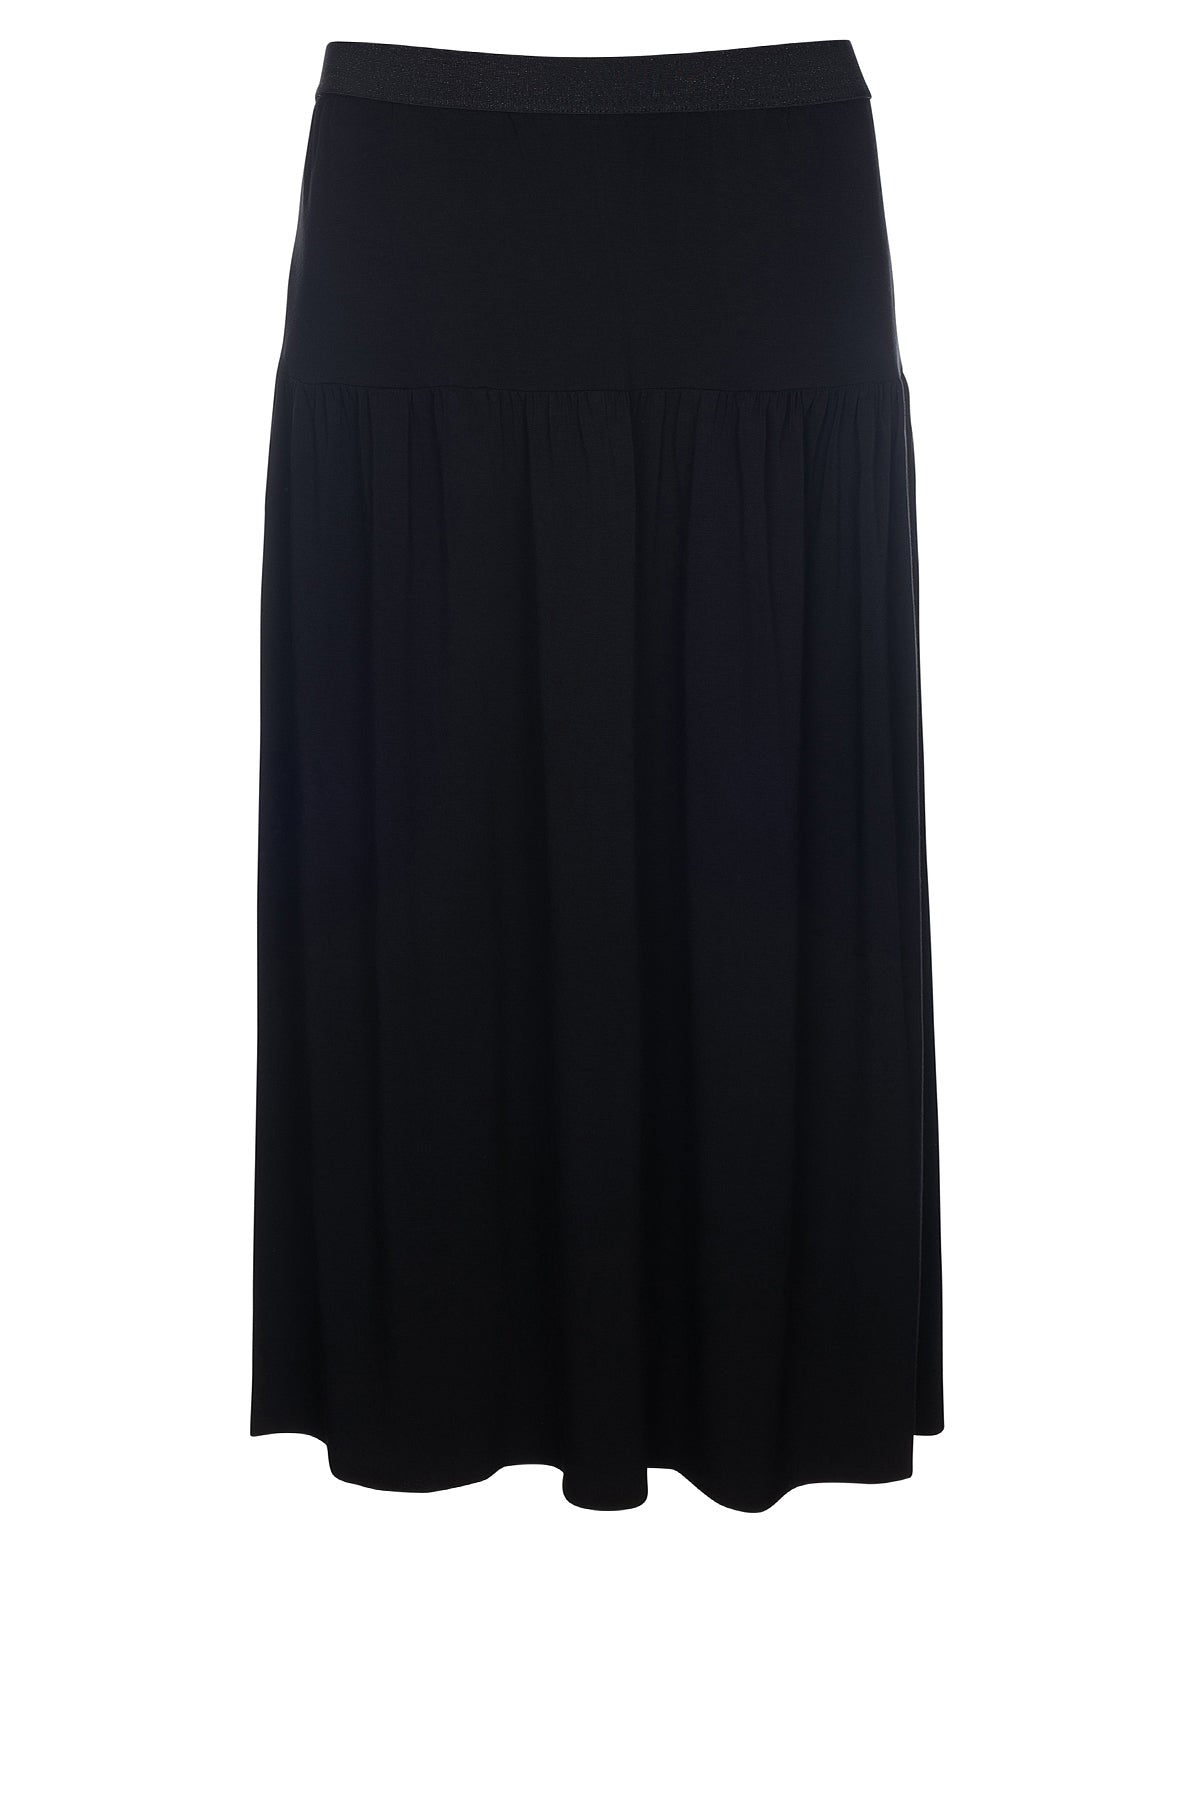 LUXZUZ // ONE TWO Karitinia Skirt Skirt 999 Black